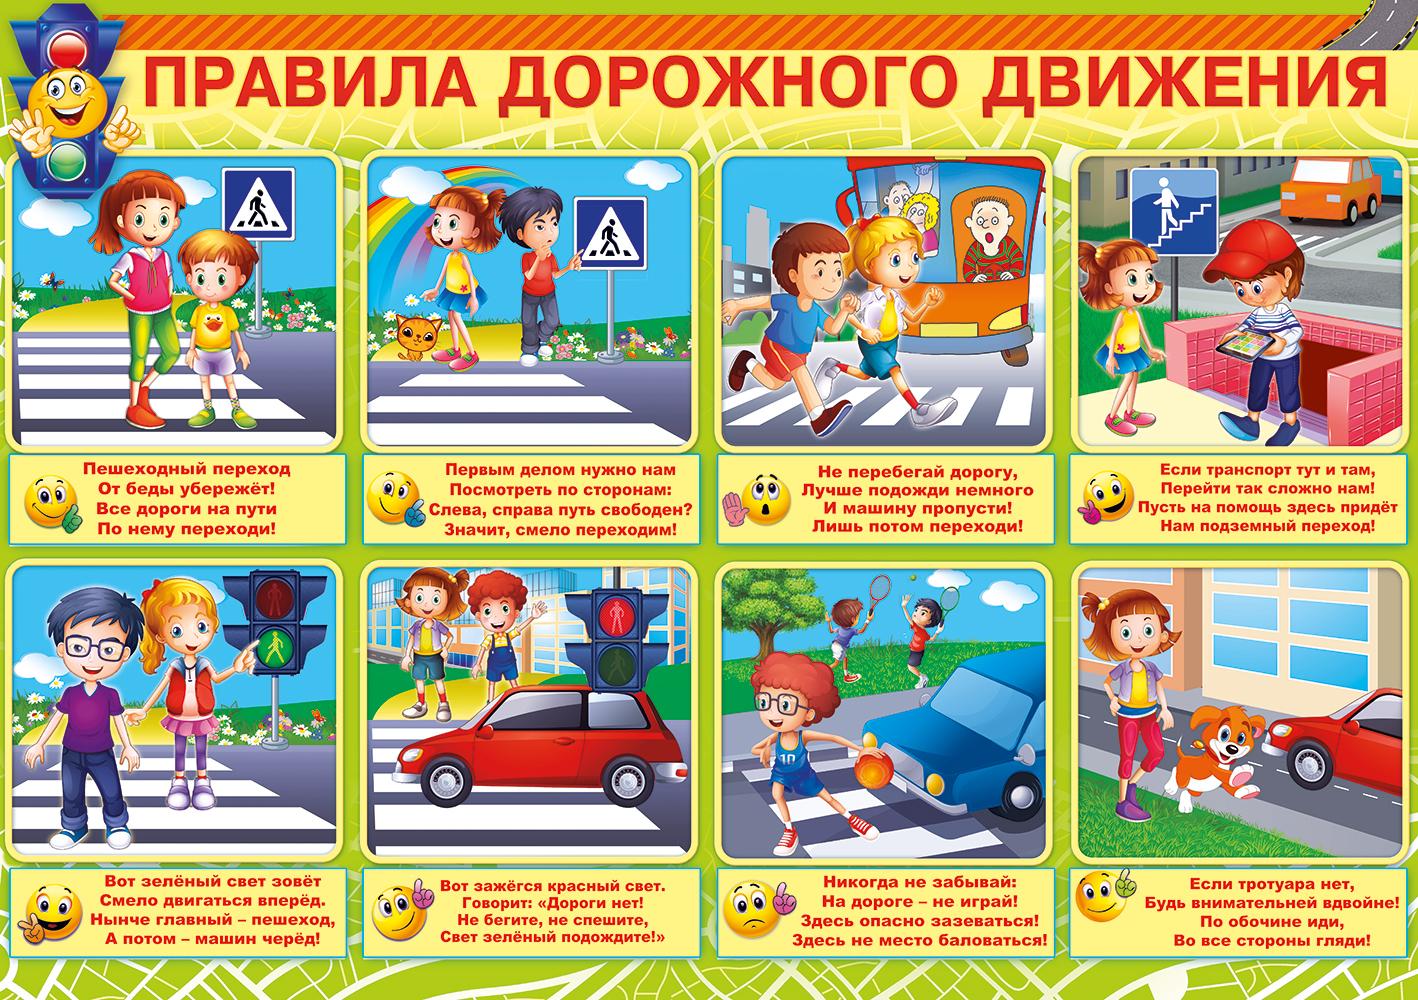 2446 1 о безопасности. Правила дорожного движения для детей. Дорожное движение для дошкольников. ПДД для дошкольников. Дорожная безопасность для дошкольников.